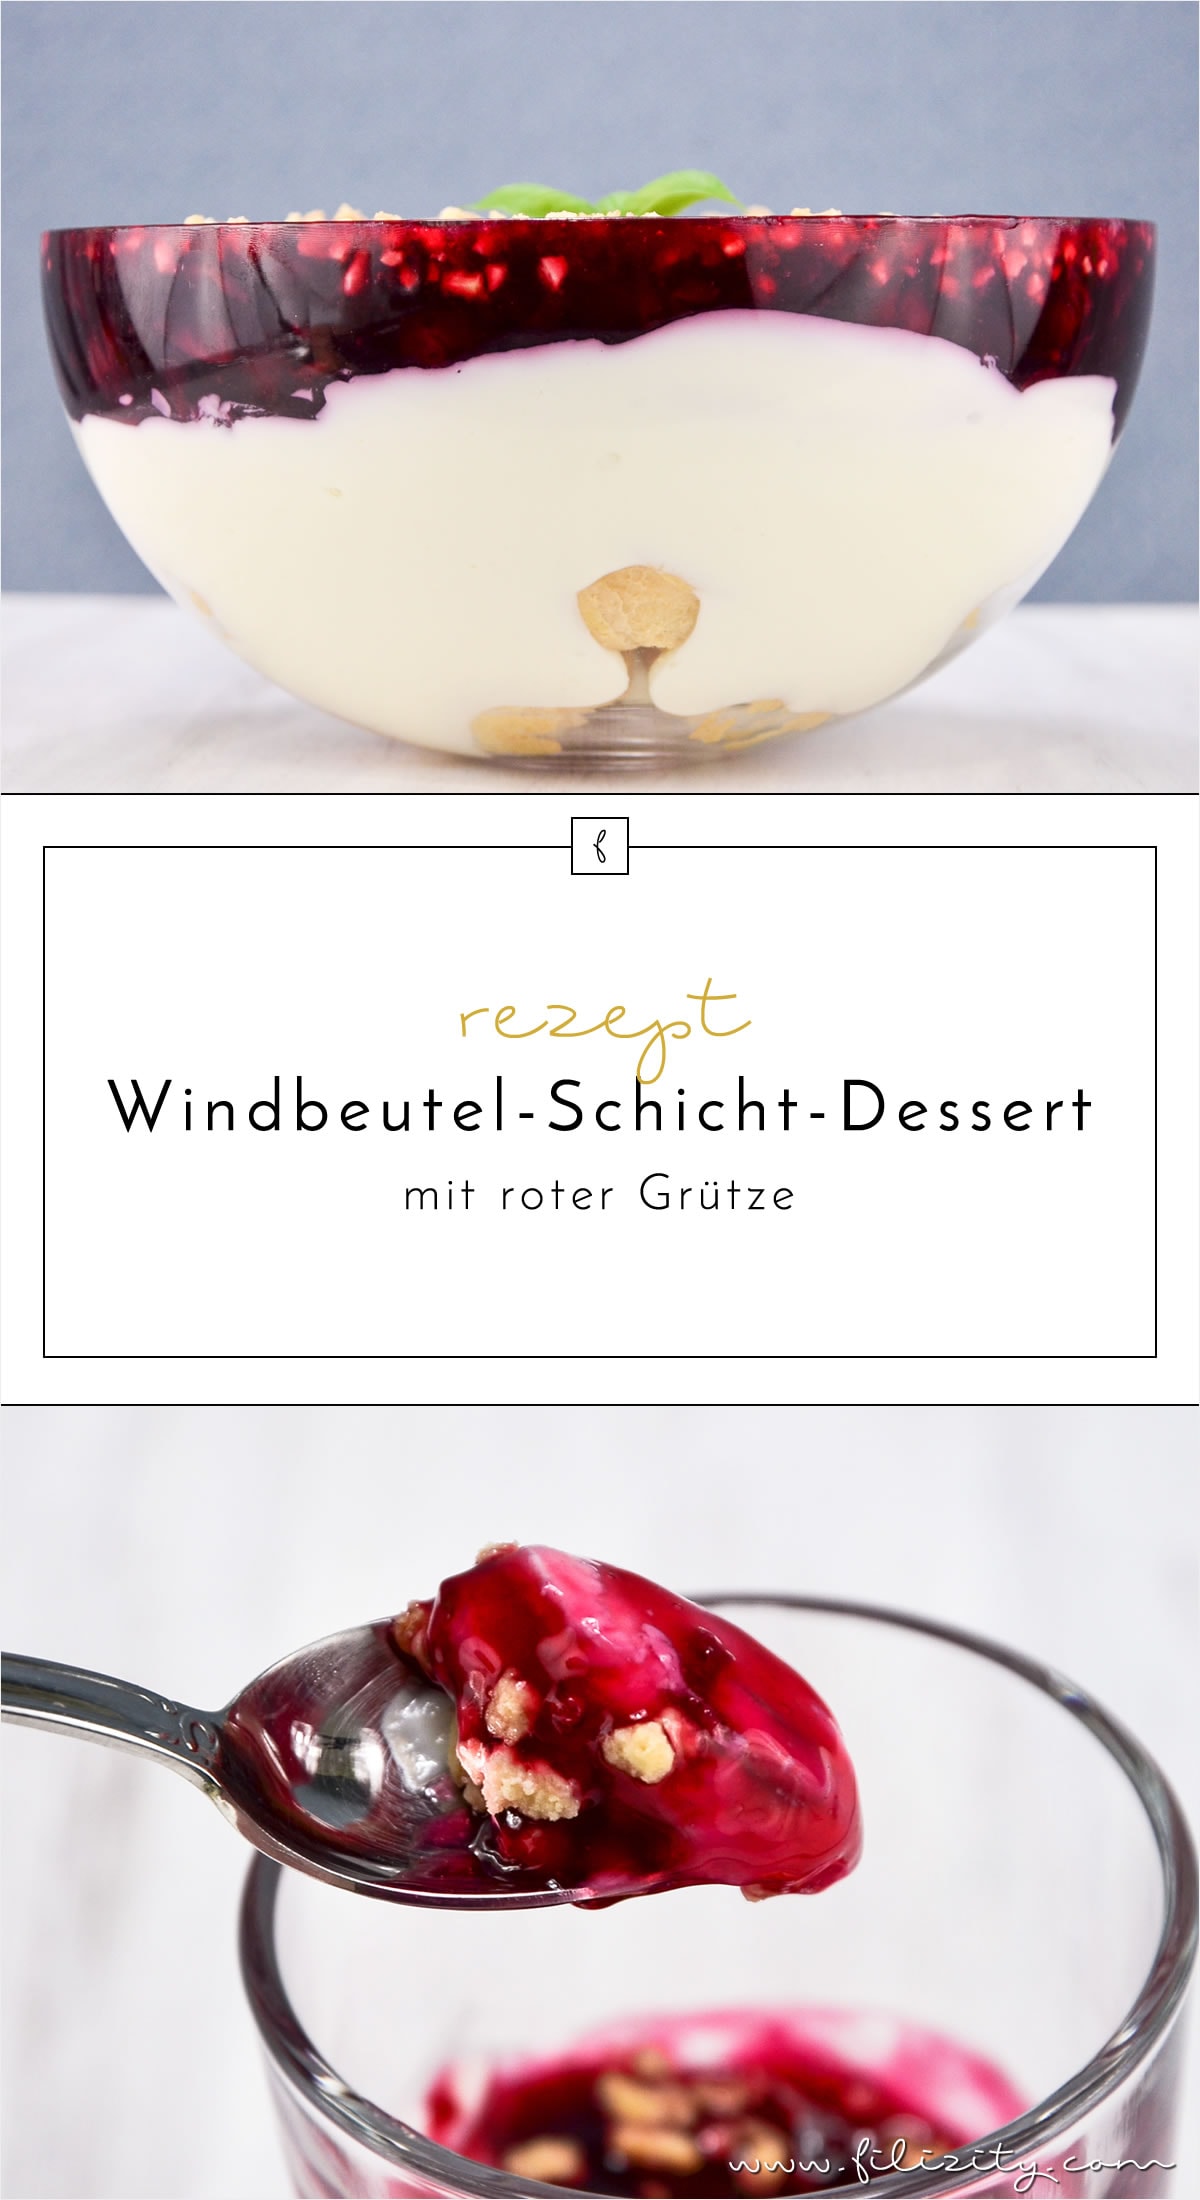 Sommer-Rezept: Windbeutel-Schicht-Dessert mit roter Grütze